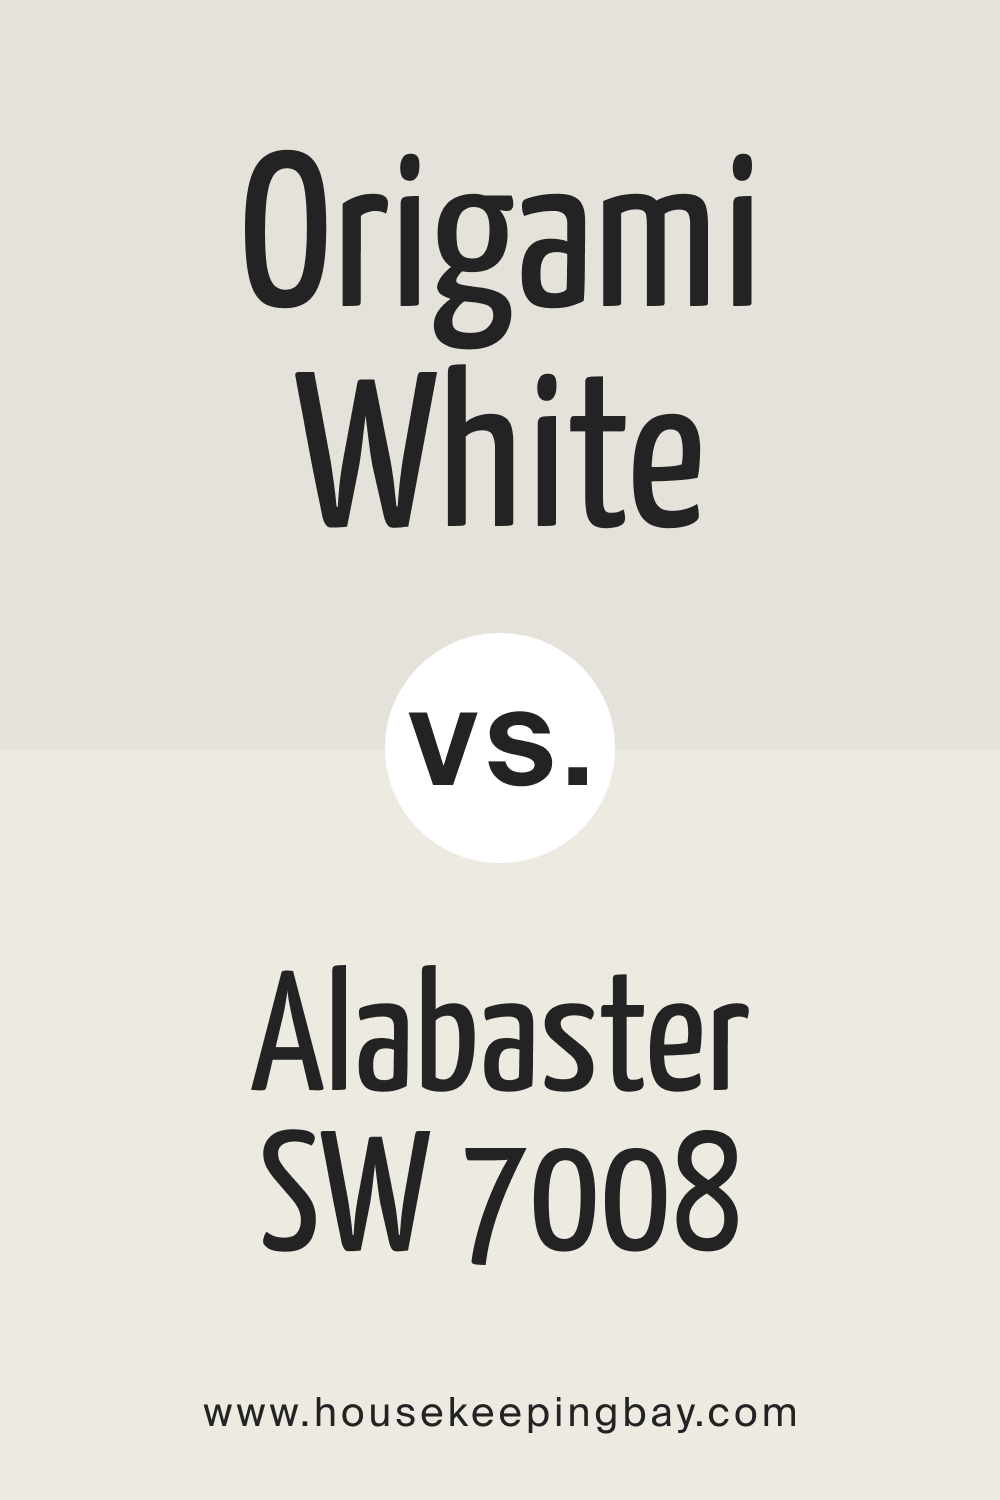 Origami White SW 7636 vs Alabaster SW 7008